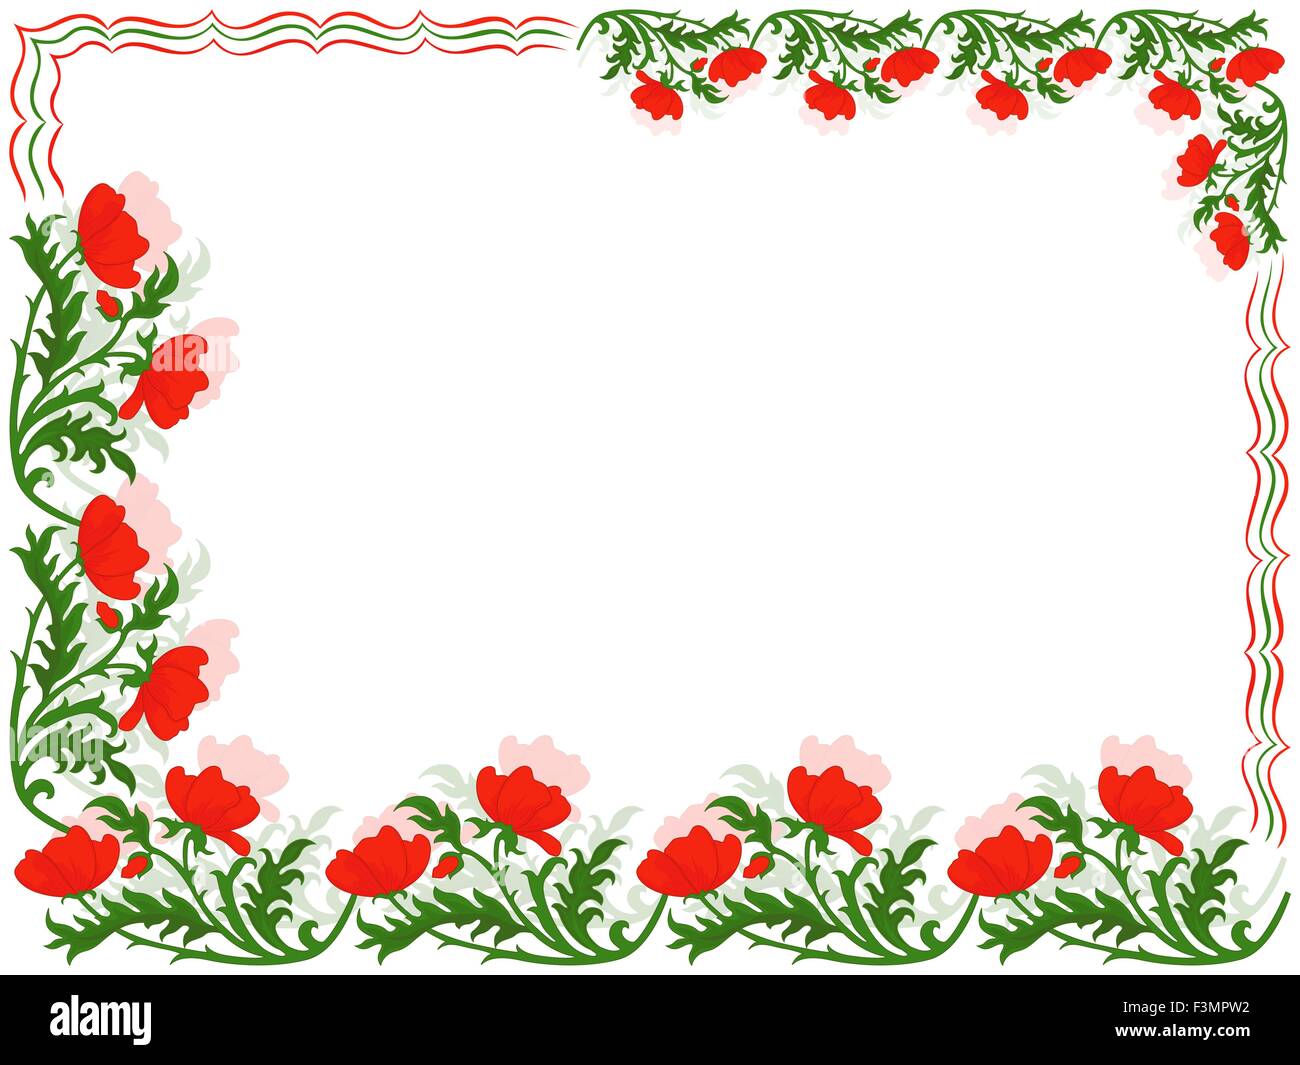 Grusskarte Mit Platziert Im Umkreis Eine Florale Ornament Mit Roten Mohnblumen Und Bunten Linien Zeichnen Vektor Illus Hand Stock Vektorgrafik Alamy